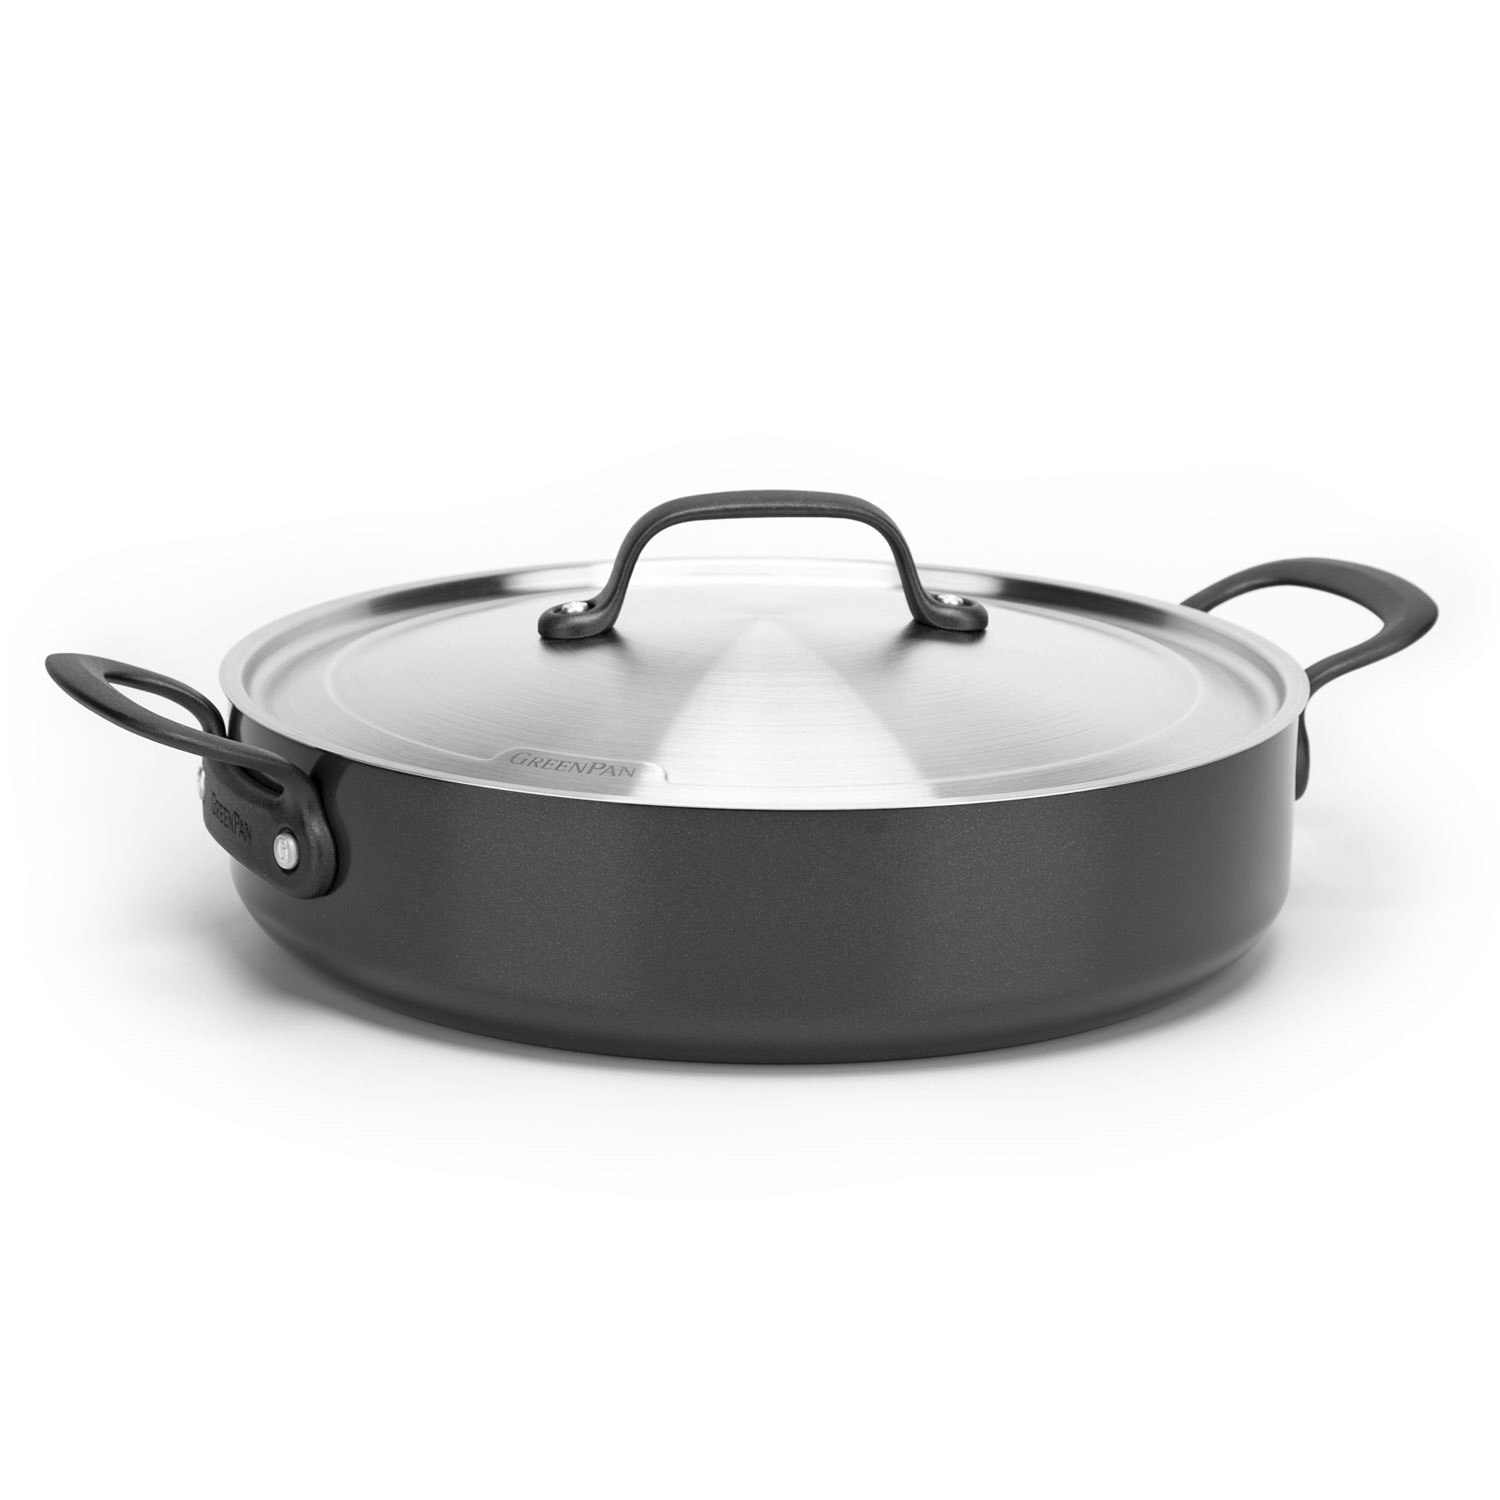 GreenPan Craft Frying Pan with Lid 30 cm - Sauté & Sauteuse Pans Aluminium Black - CC002268-001